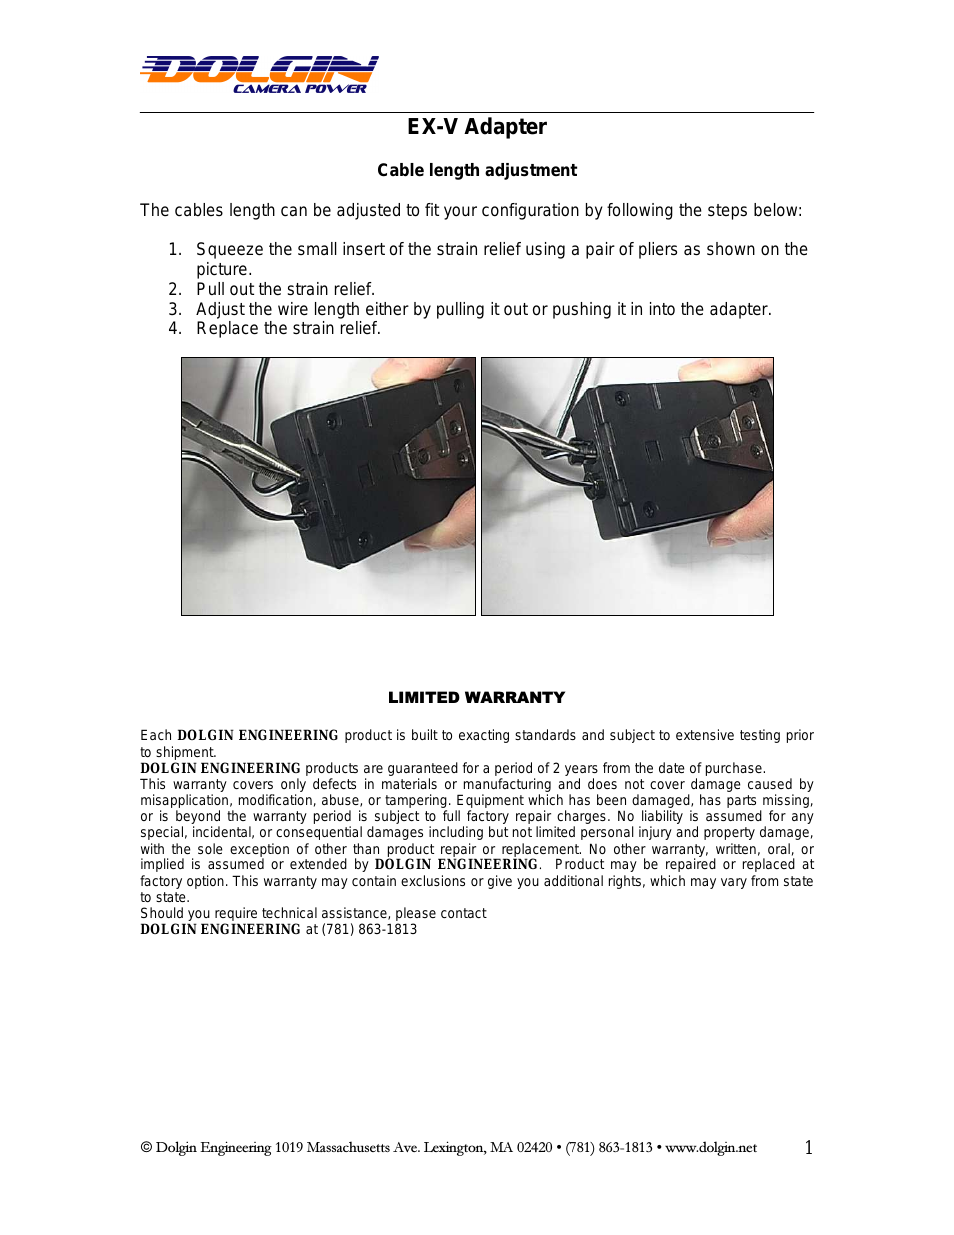 EX-V adapter manual